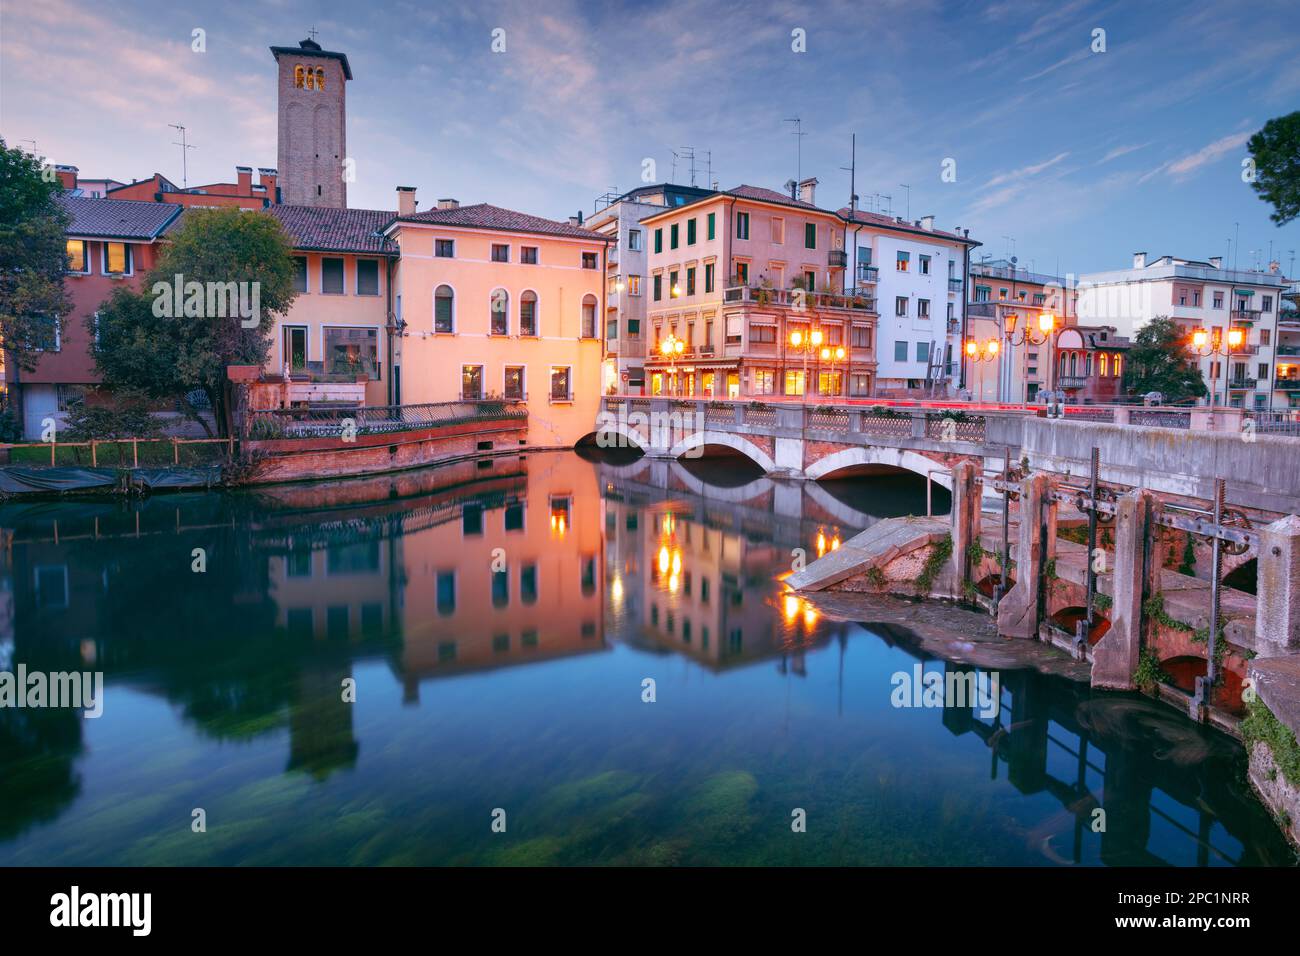 Treviso, Italien. Stadtbild des historischen Zentrums von Treviso, Italien bei Sonnenuntergang. Stockfoto